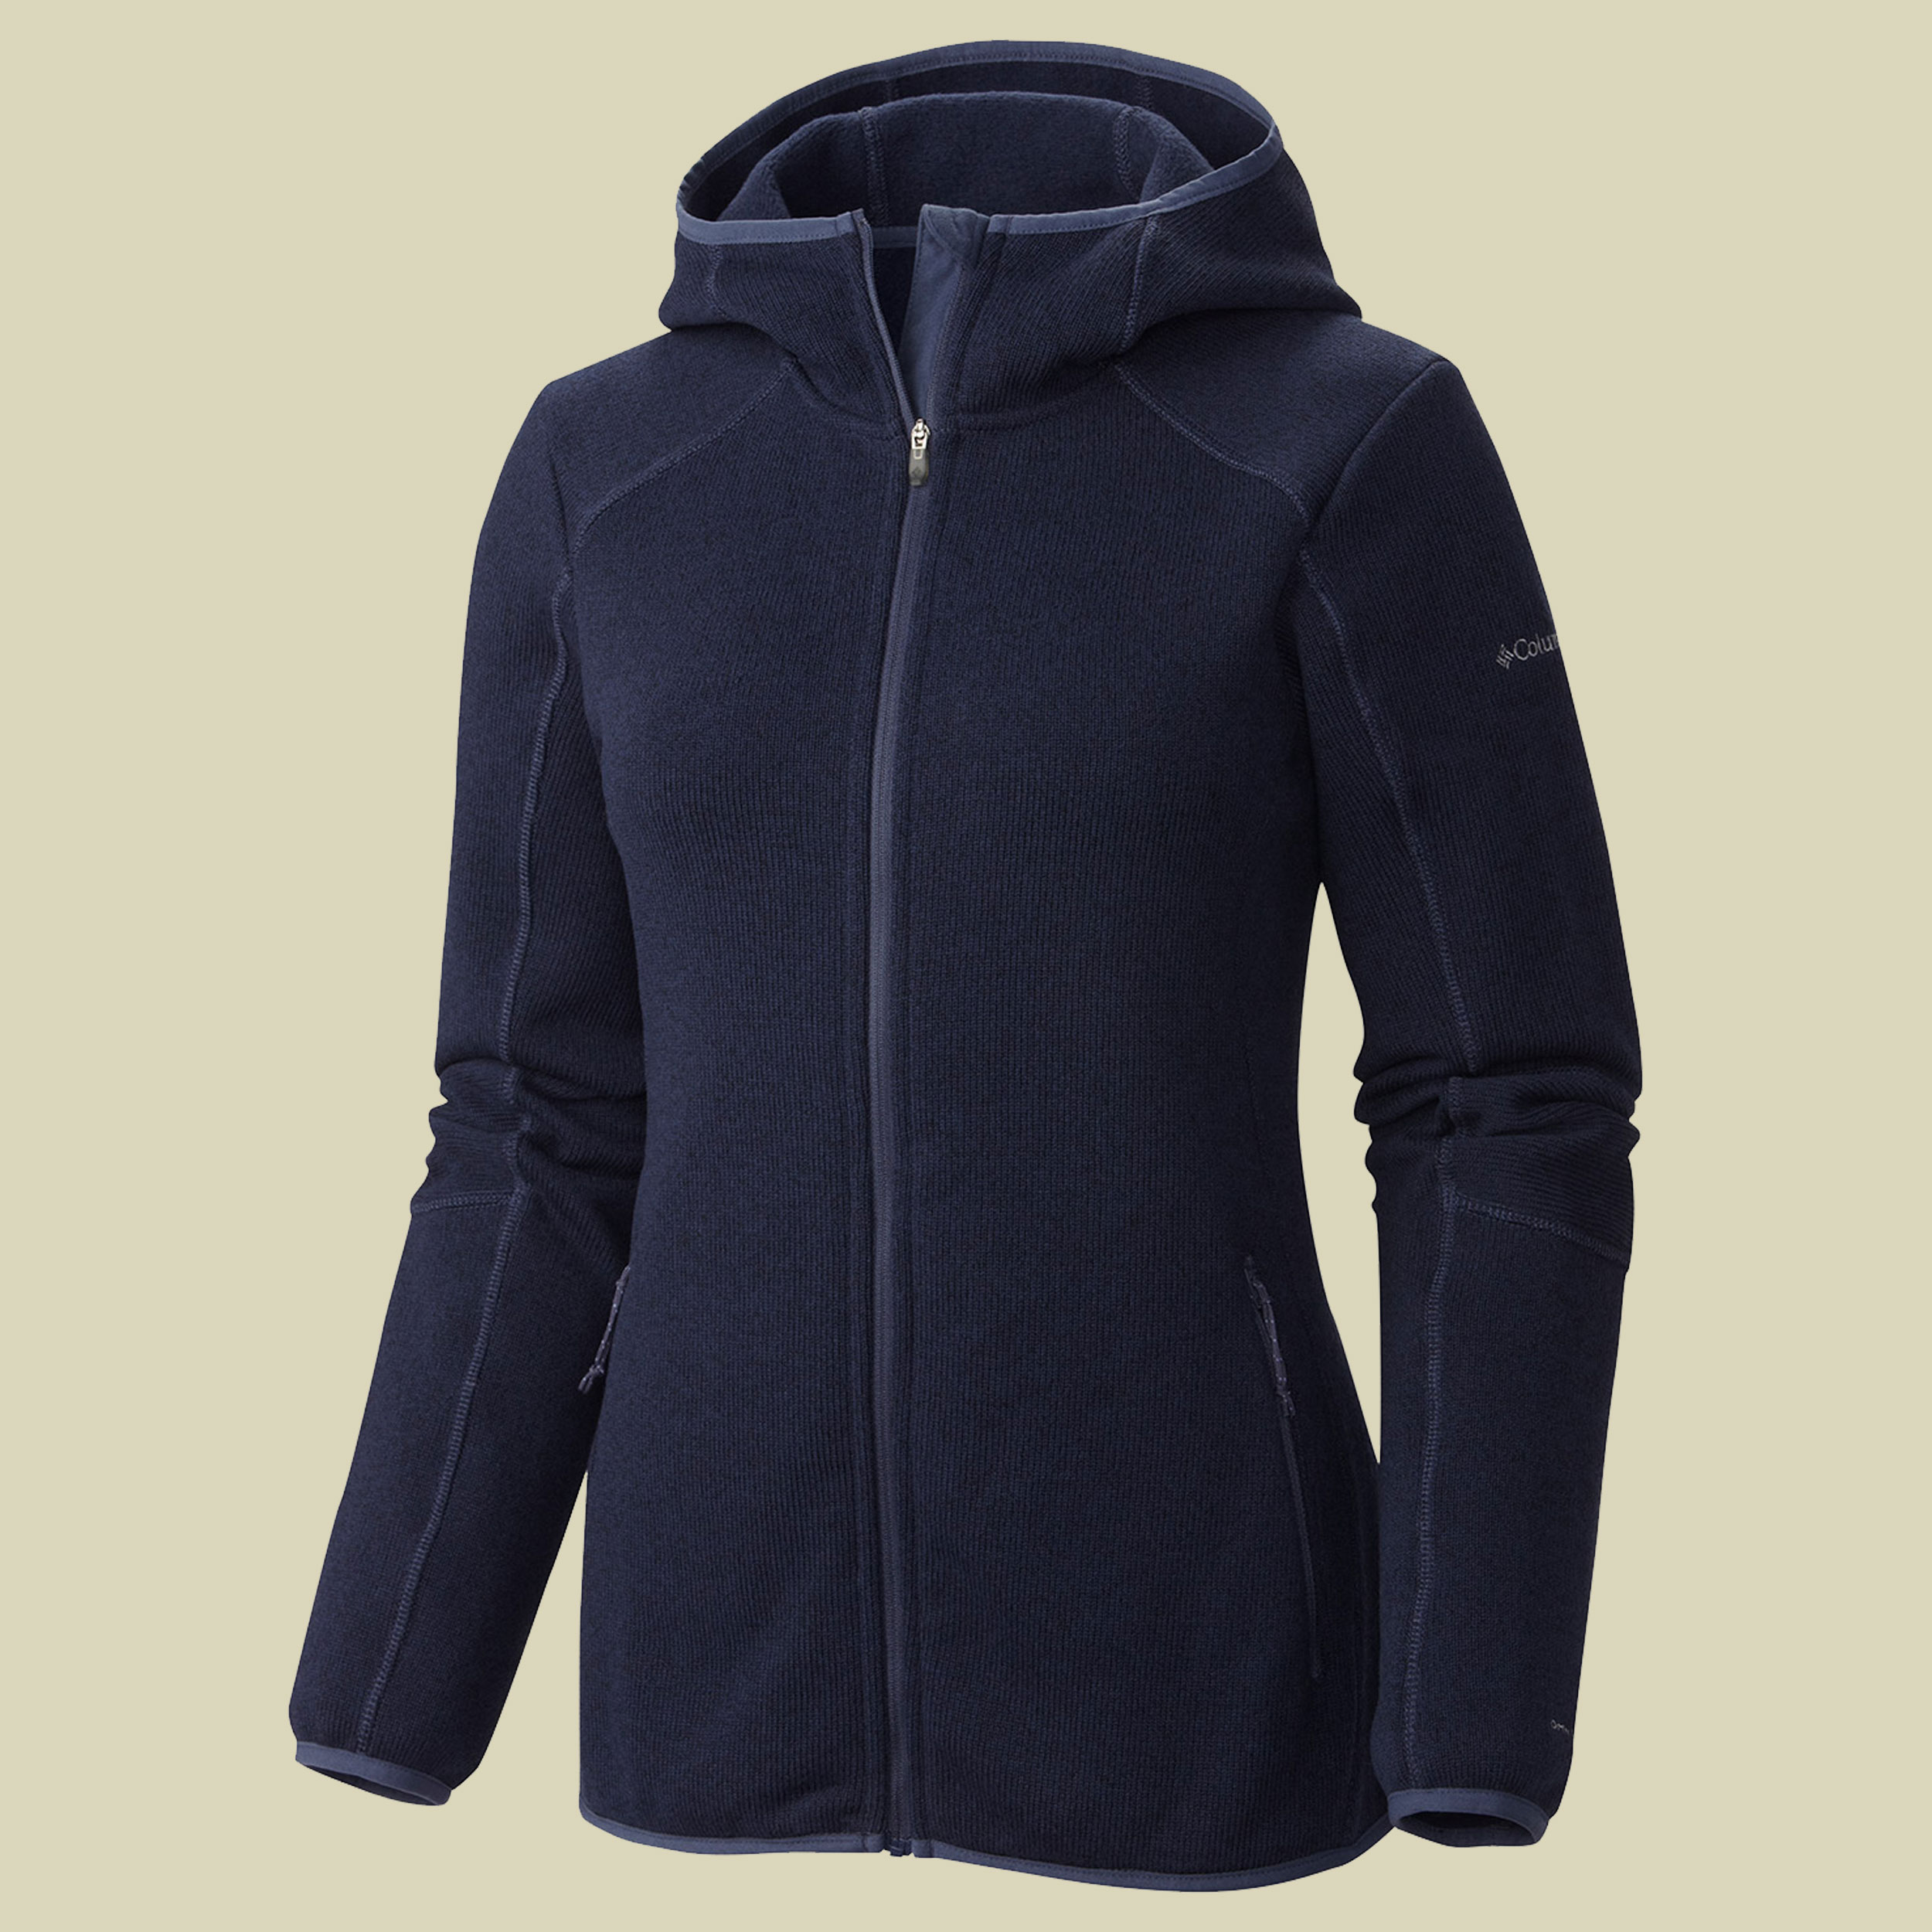 Altitude Aspect Hooded Fleece Jacket Women Größe XS Farbe sea salt